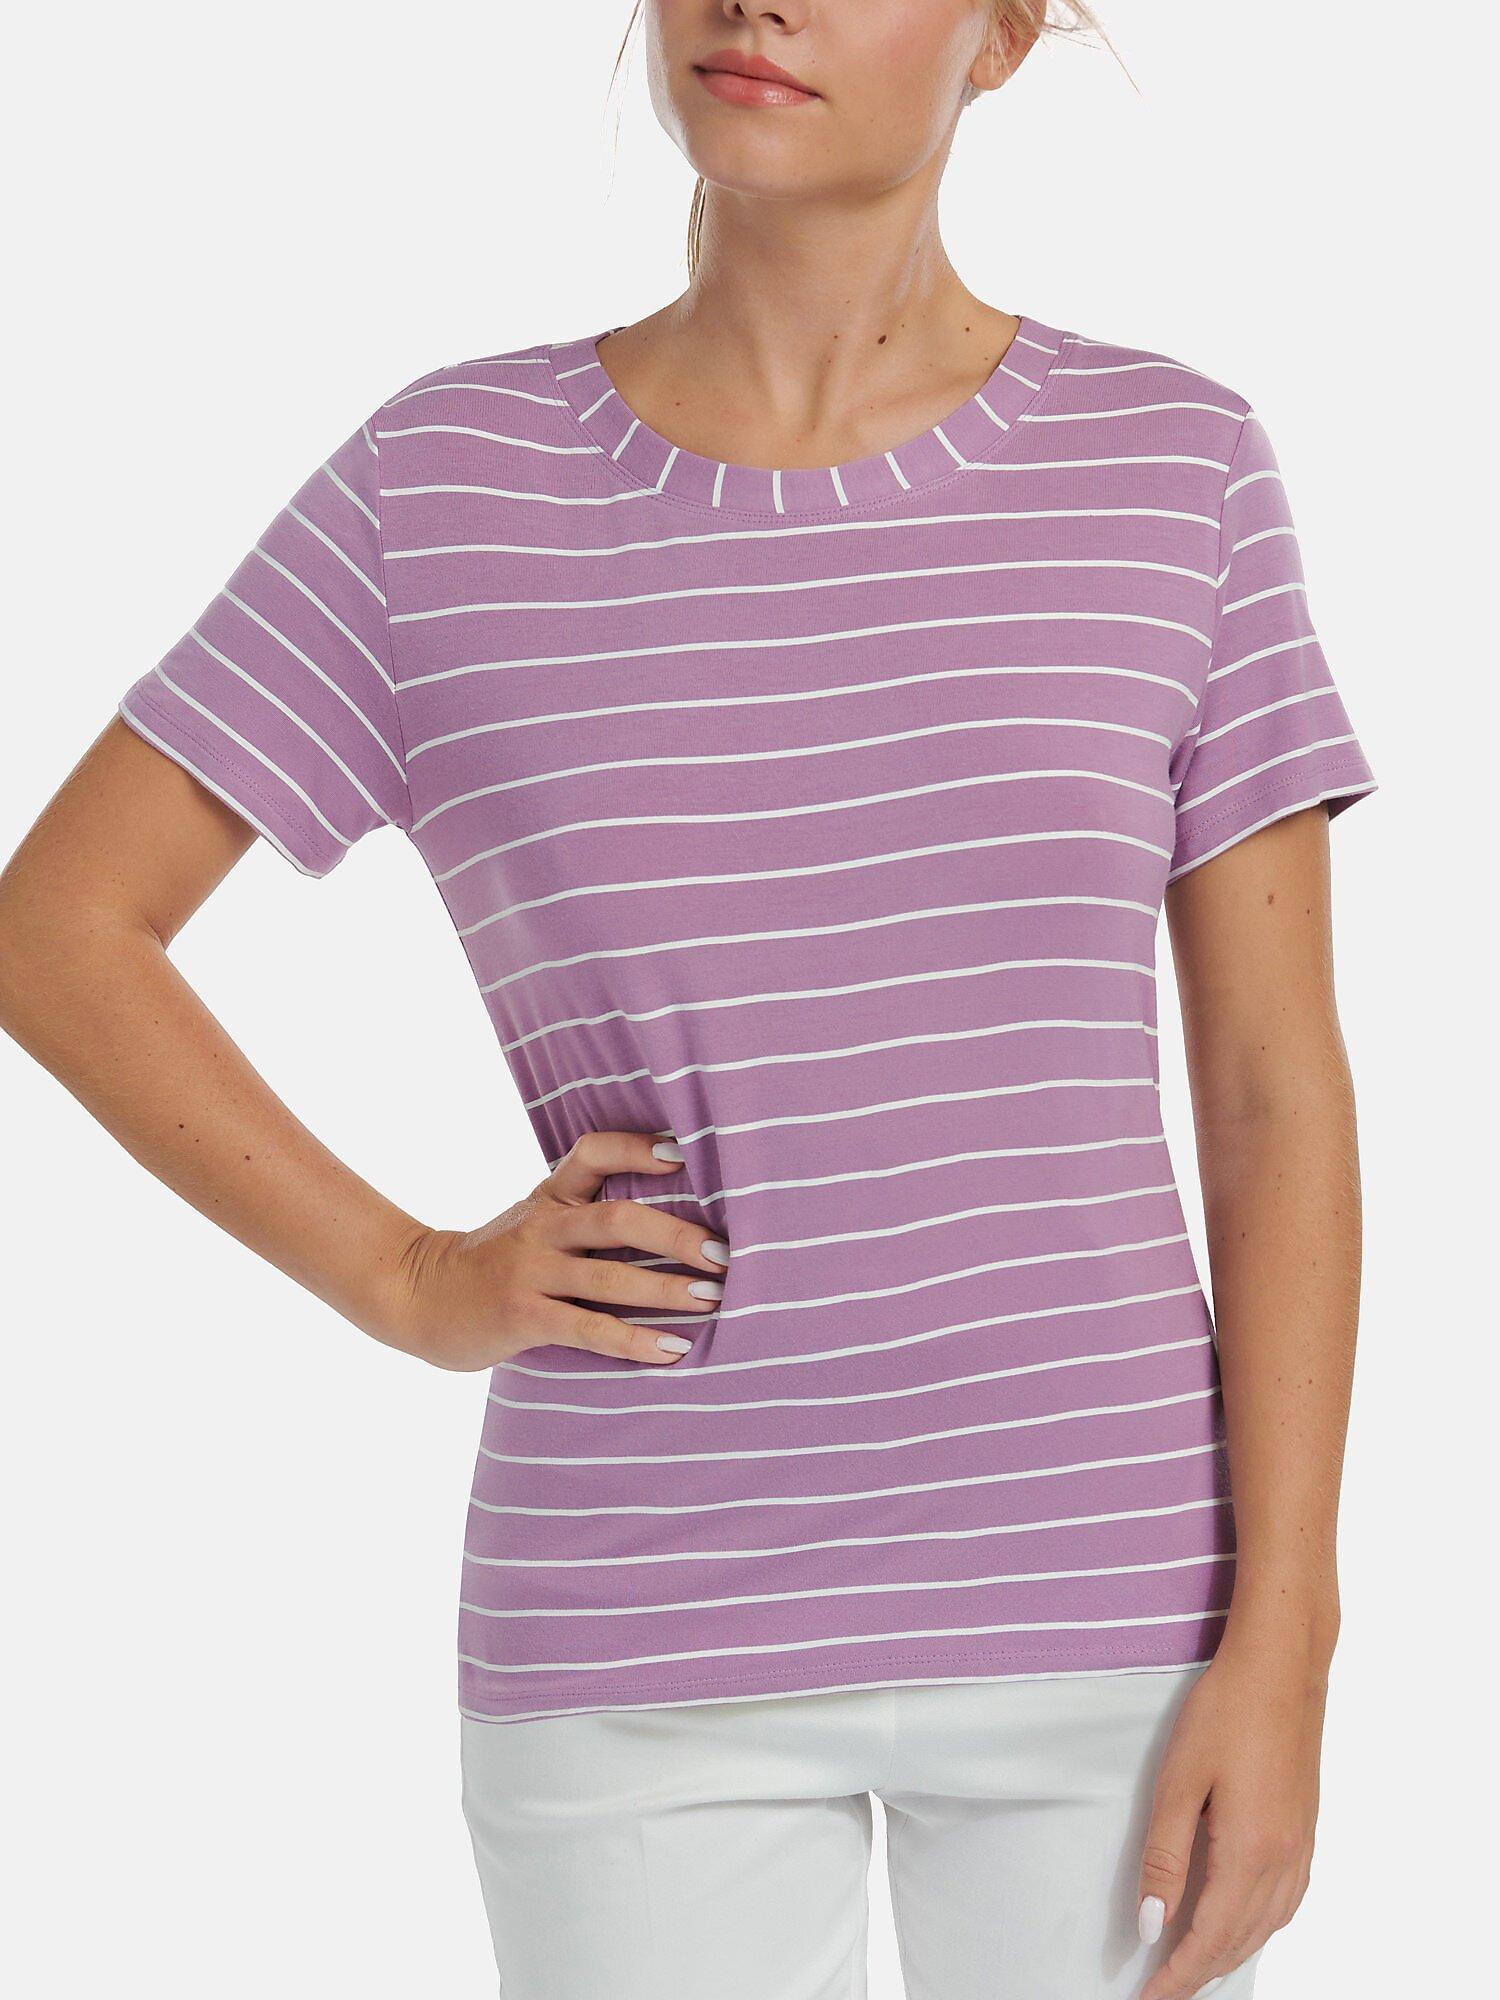 T-shirt Mit Kurzen Ärmeln Posh Damen Violett Bedruckt M von Lisca